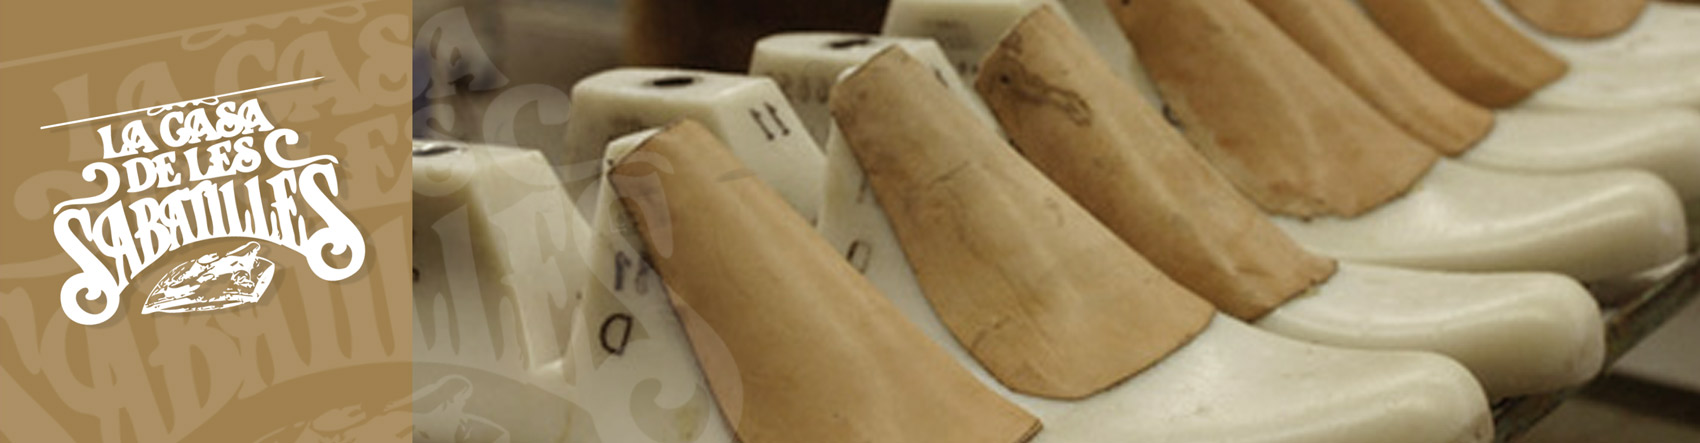 Venta de zapatillas Nordikas - La casa de las zapatillas - venta de calzados Nordikas, Calzados Montane, Calzados Festival, zapatillas esparto, hechas a mano en España. Outlet